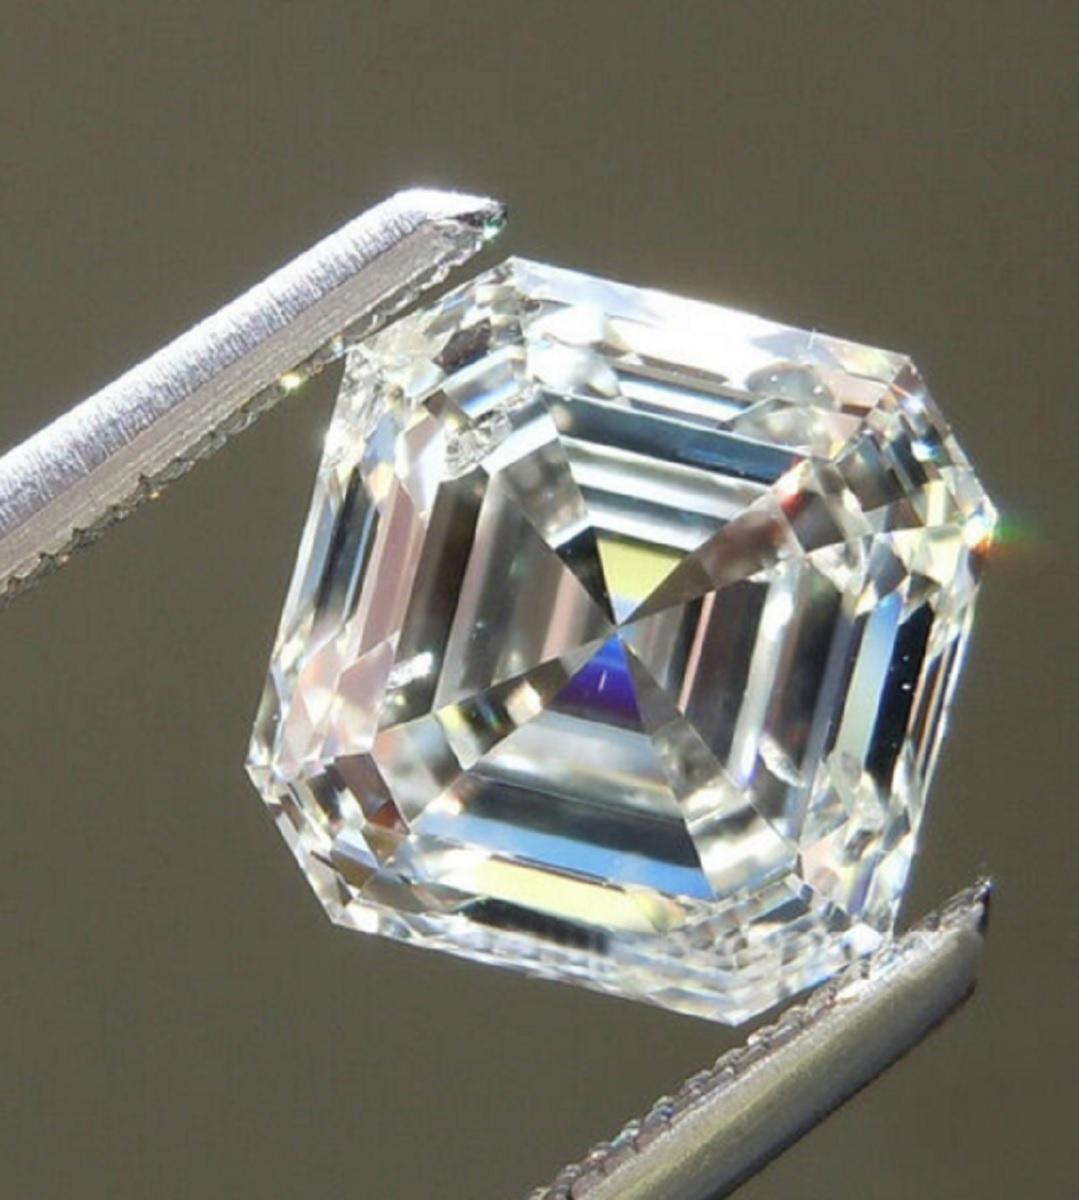 8 carat asscher cut diamond ring